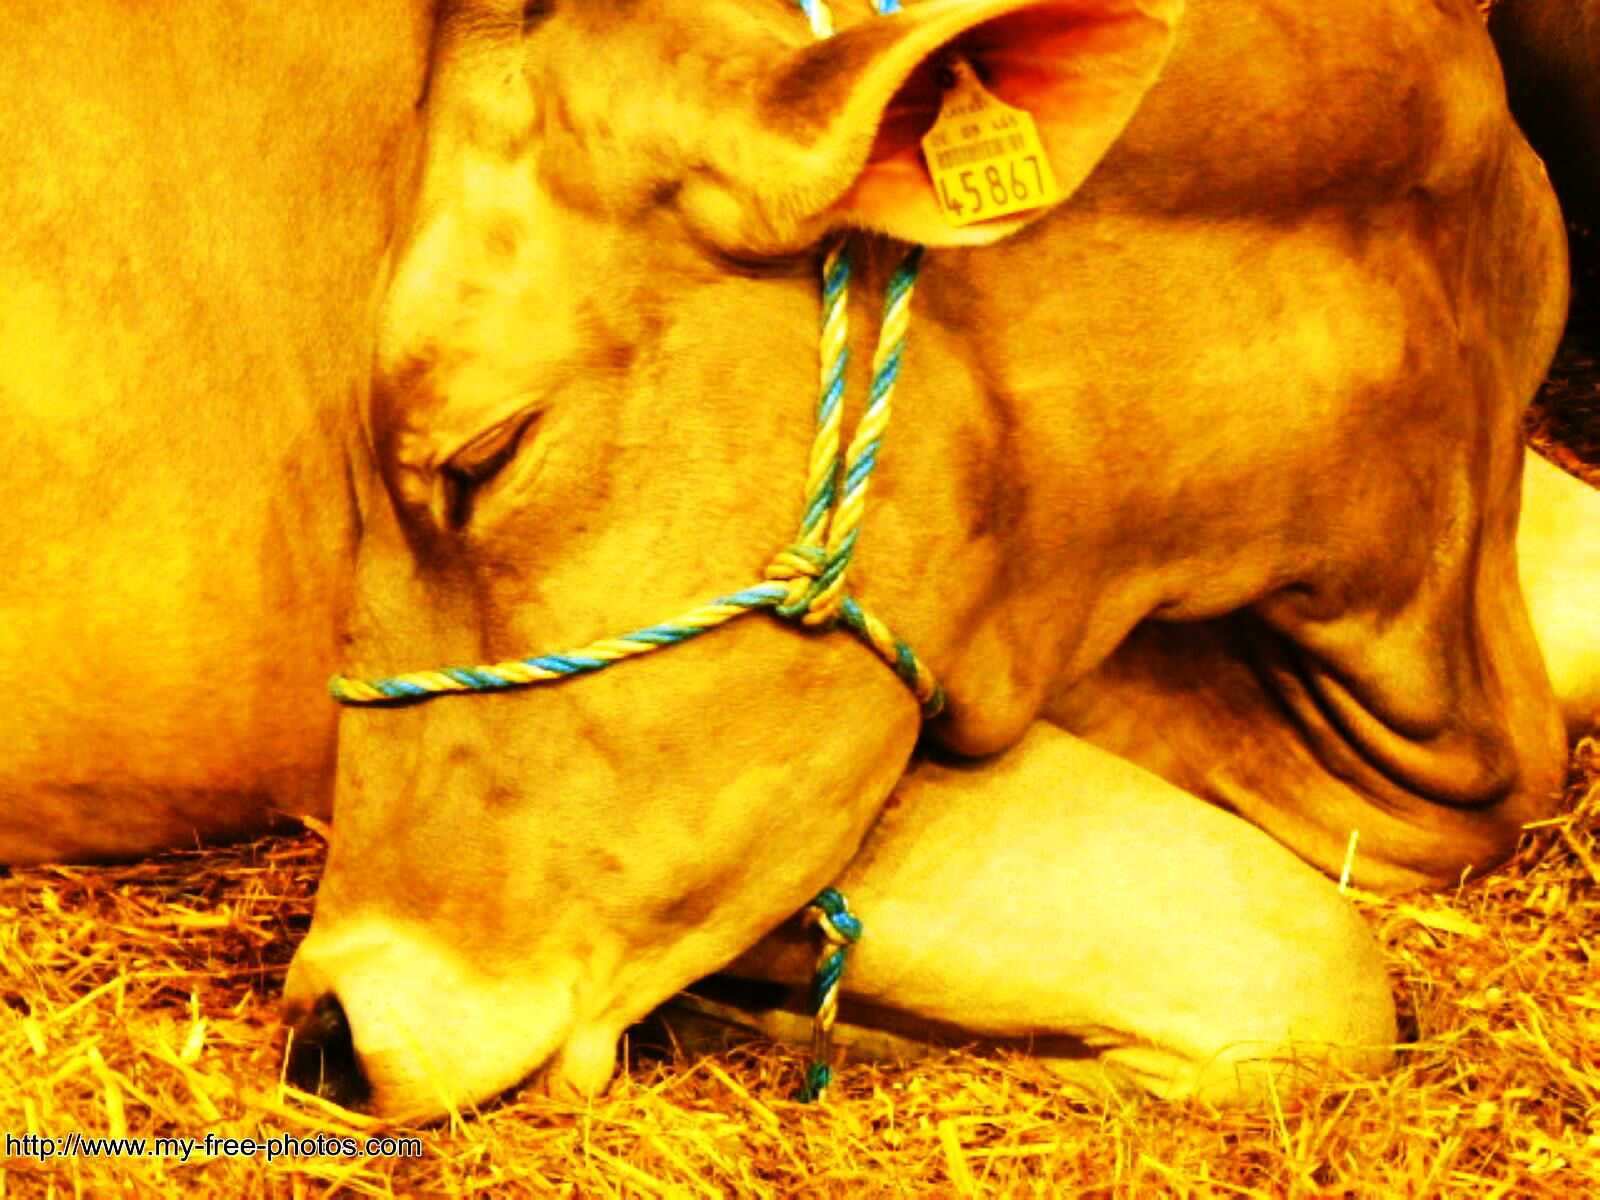 Golden calf